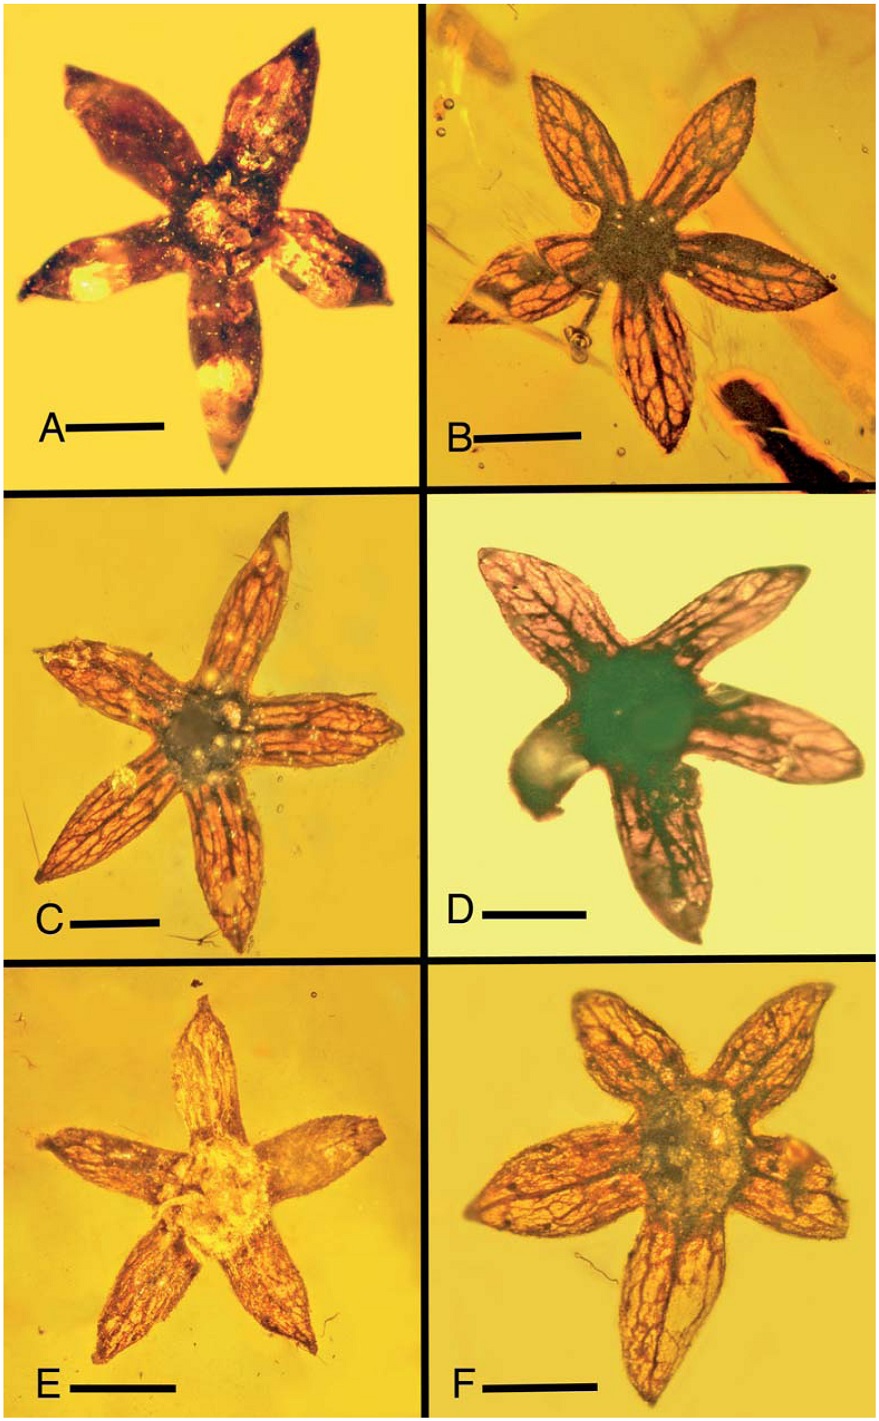 Откриха неизвестни цветя на 100 млн. години, запечатани в кехлибар (СНИМКИ)